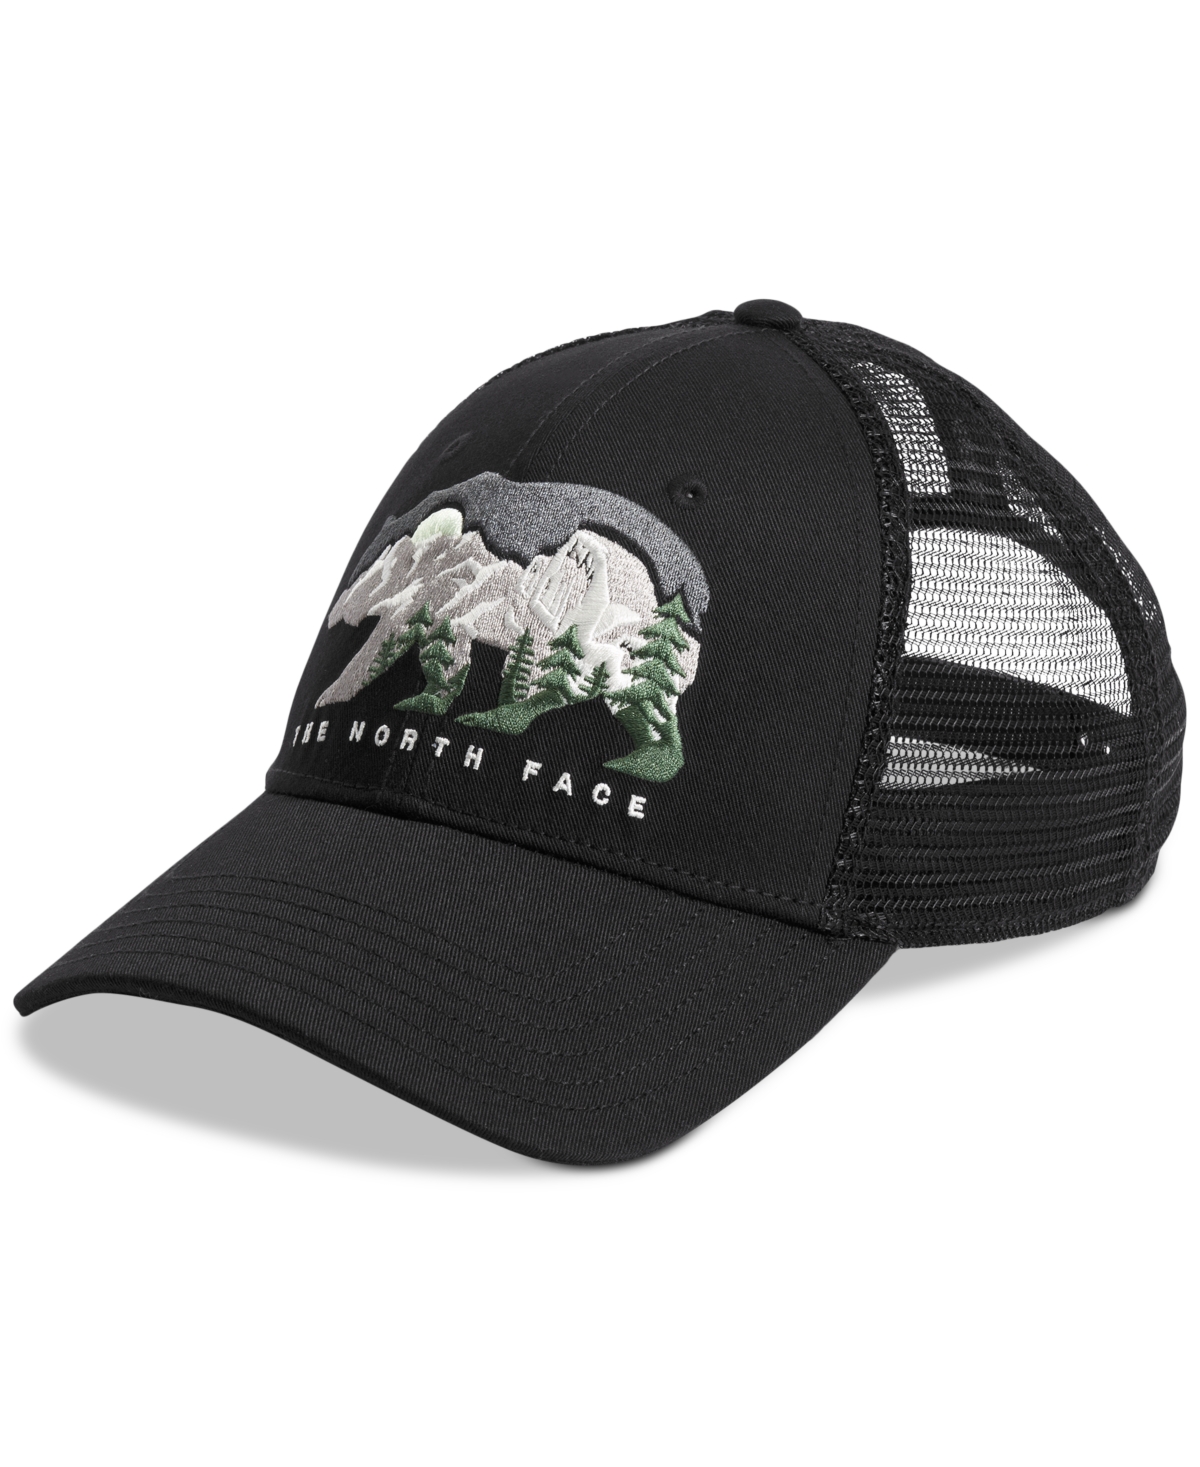 Men's Embroidered Mesh-Panel Trucker Hat - Tnf Black/bear Graphic